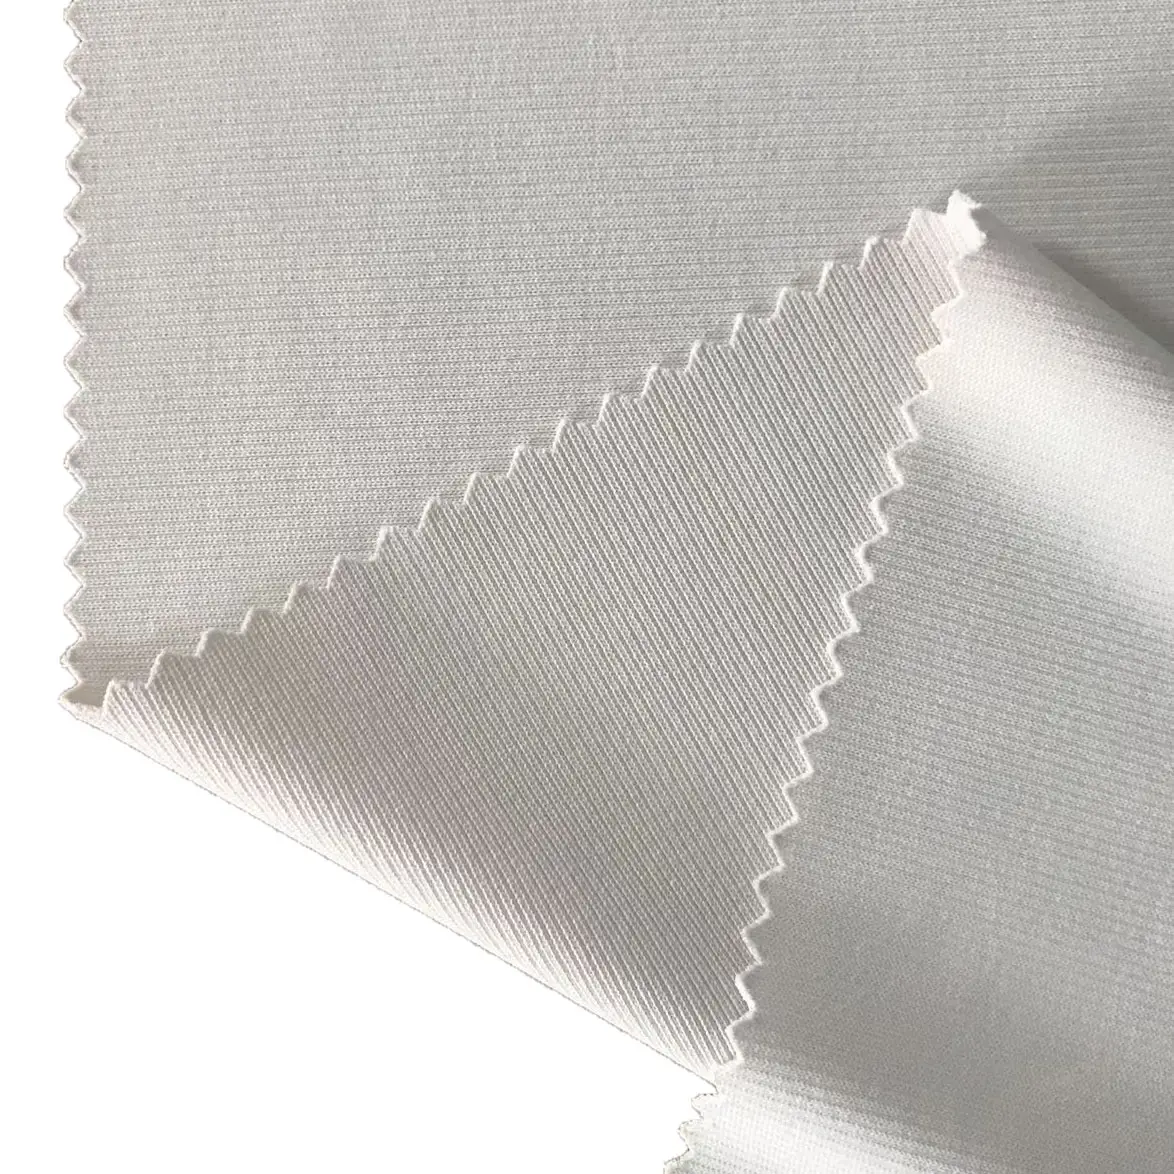 Groothandel Luxe Textiel Deluster 100% Milieuvriendelijke Polyester Gebreide Interlock Jersey Stof Voor Kleding